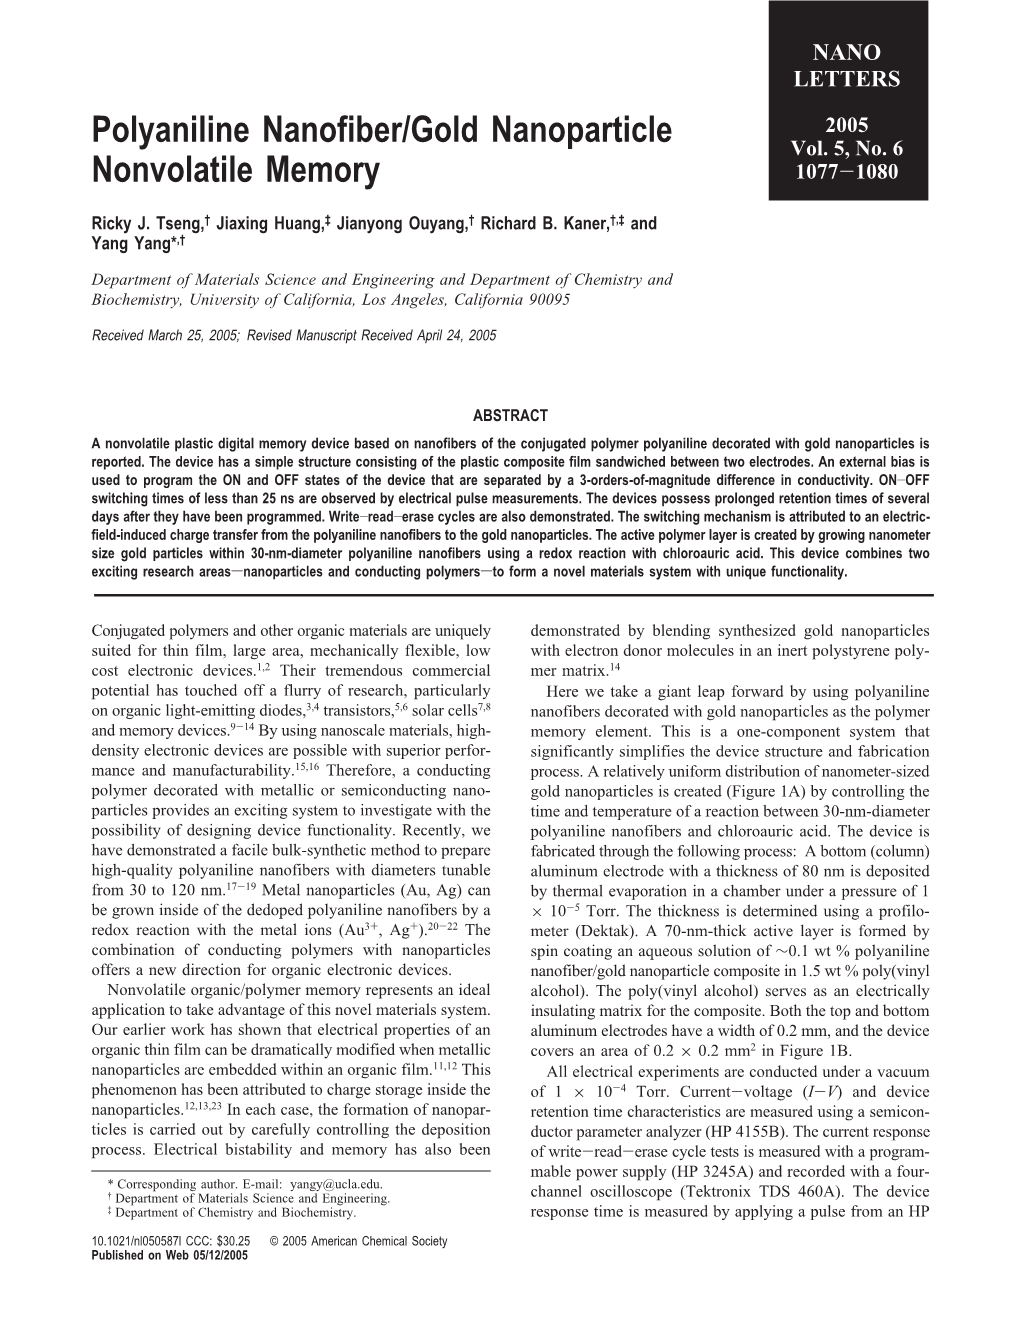 Polyaniline Nanofiber/Gold Nanoparticle Nonvolatile Memory